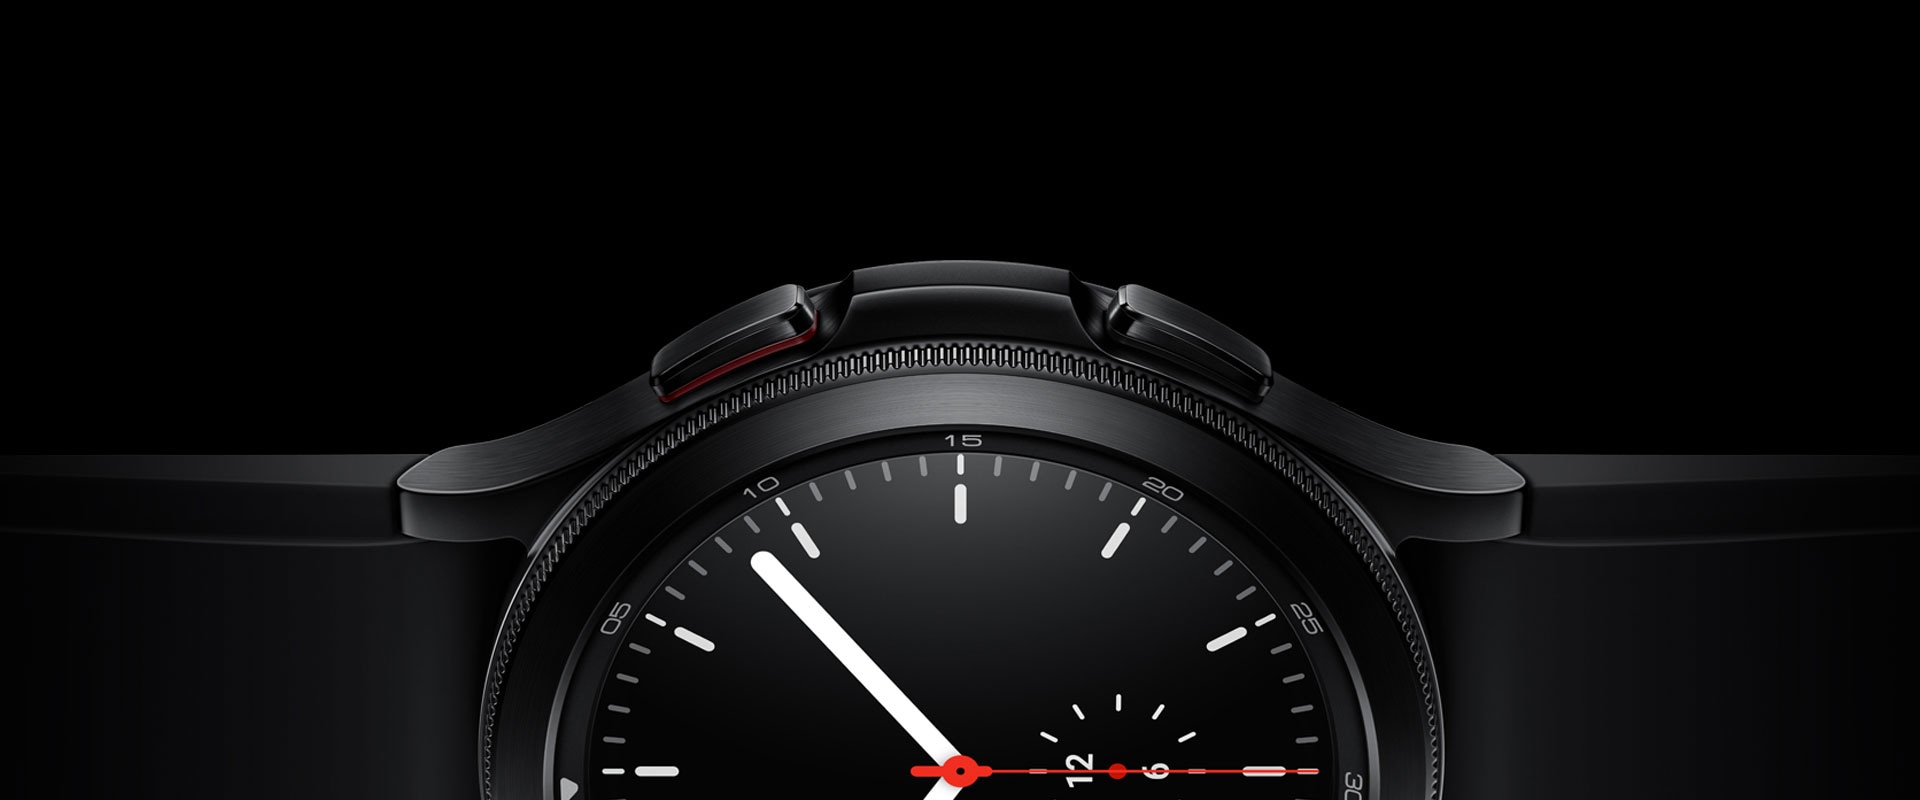 La moitié du cadran d’une Galaxy Watch 4 Classic noire est représentée de manière bien visible. Le cadran est mis en avant ainsi que ses matériaux et son écran simple indiquant l’heure.